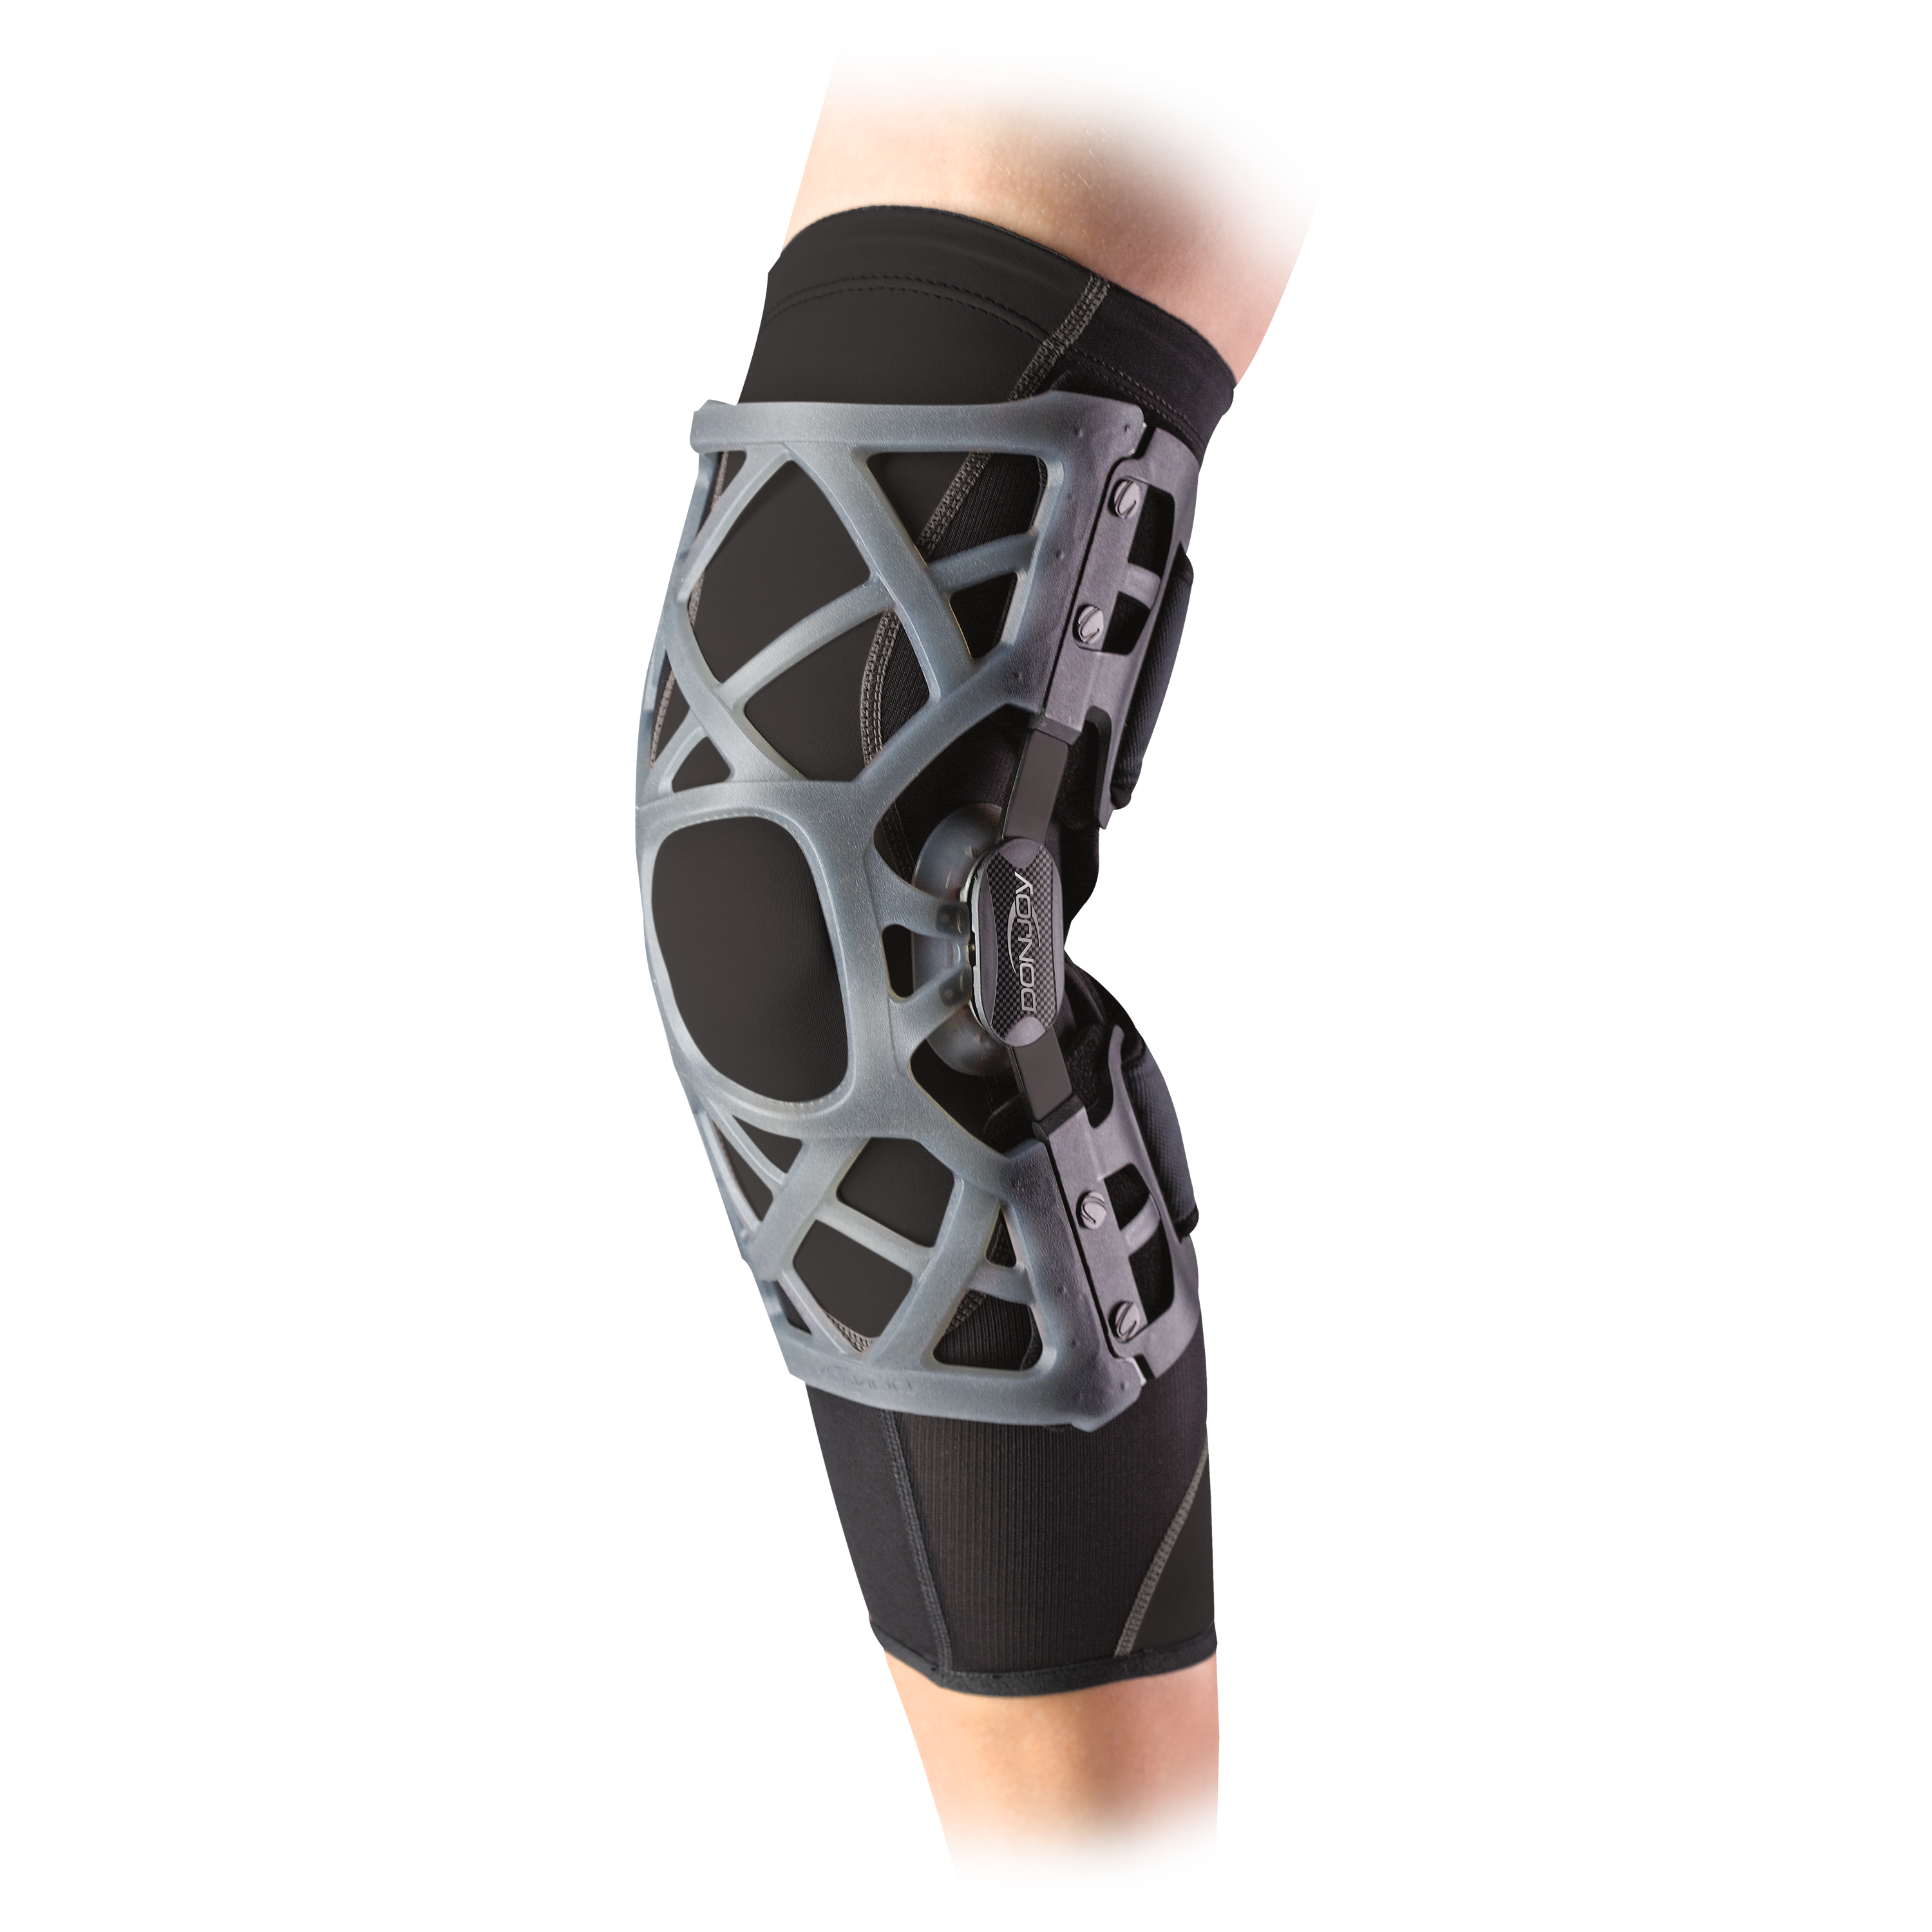 Produktbild DONJOY® Matrix OA, Knieorthese zur Entlastung eines Kompartiments nach dem 3-Punkt-Prinzip